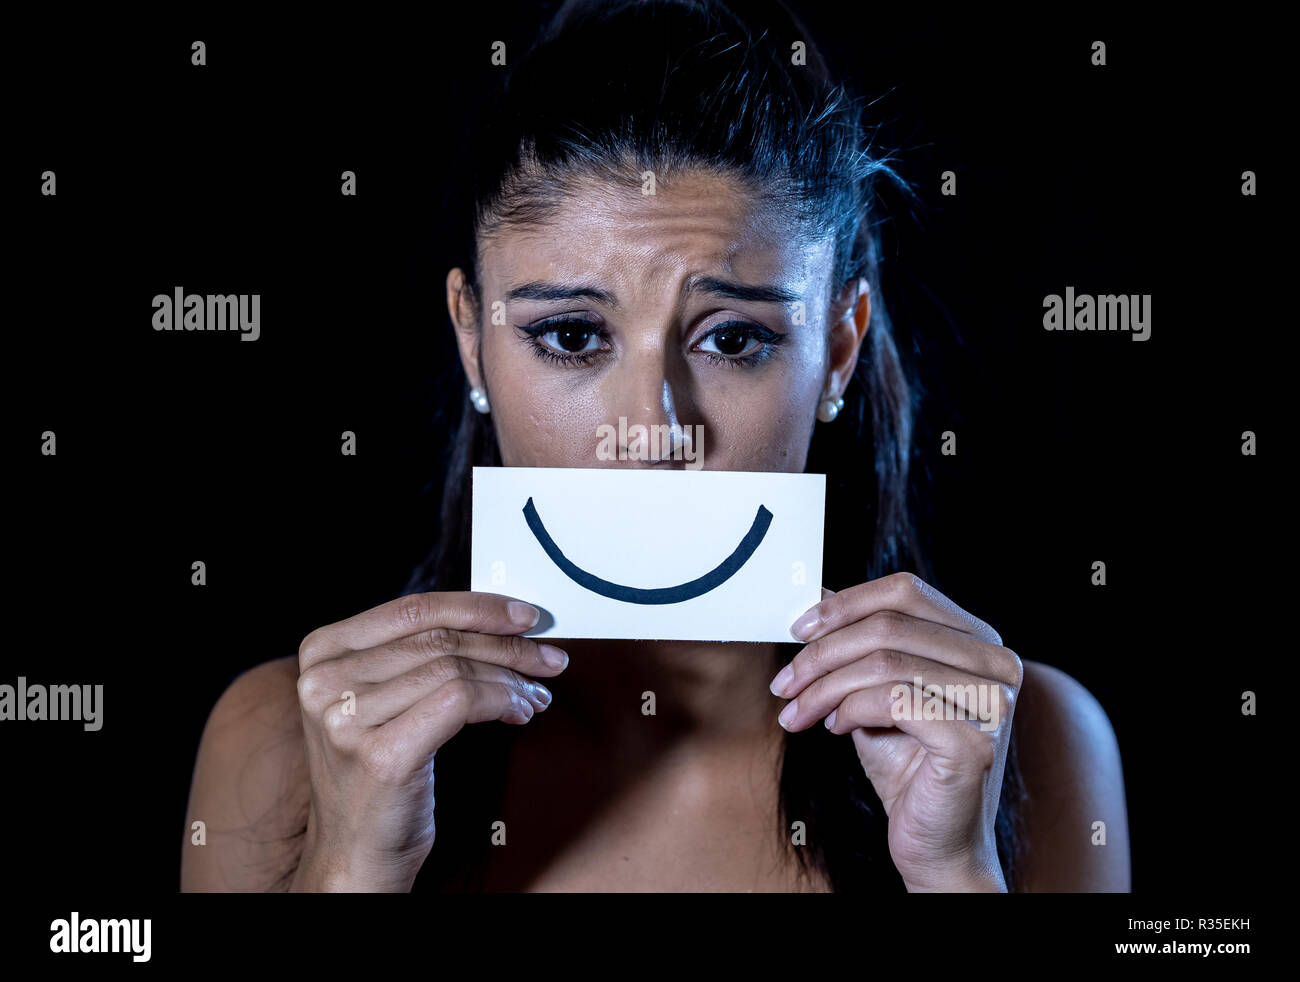 Dramatische Nahaufnahme Portrait von traurige Frau ihre Depression verstecken mit Lächeln auf Papier in der menschlichen Emotion leiden in der Stille depression Konzept iso lackiert Stockfoto